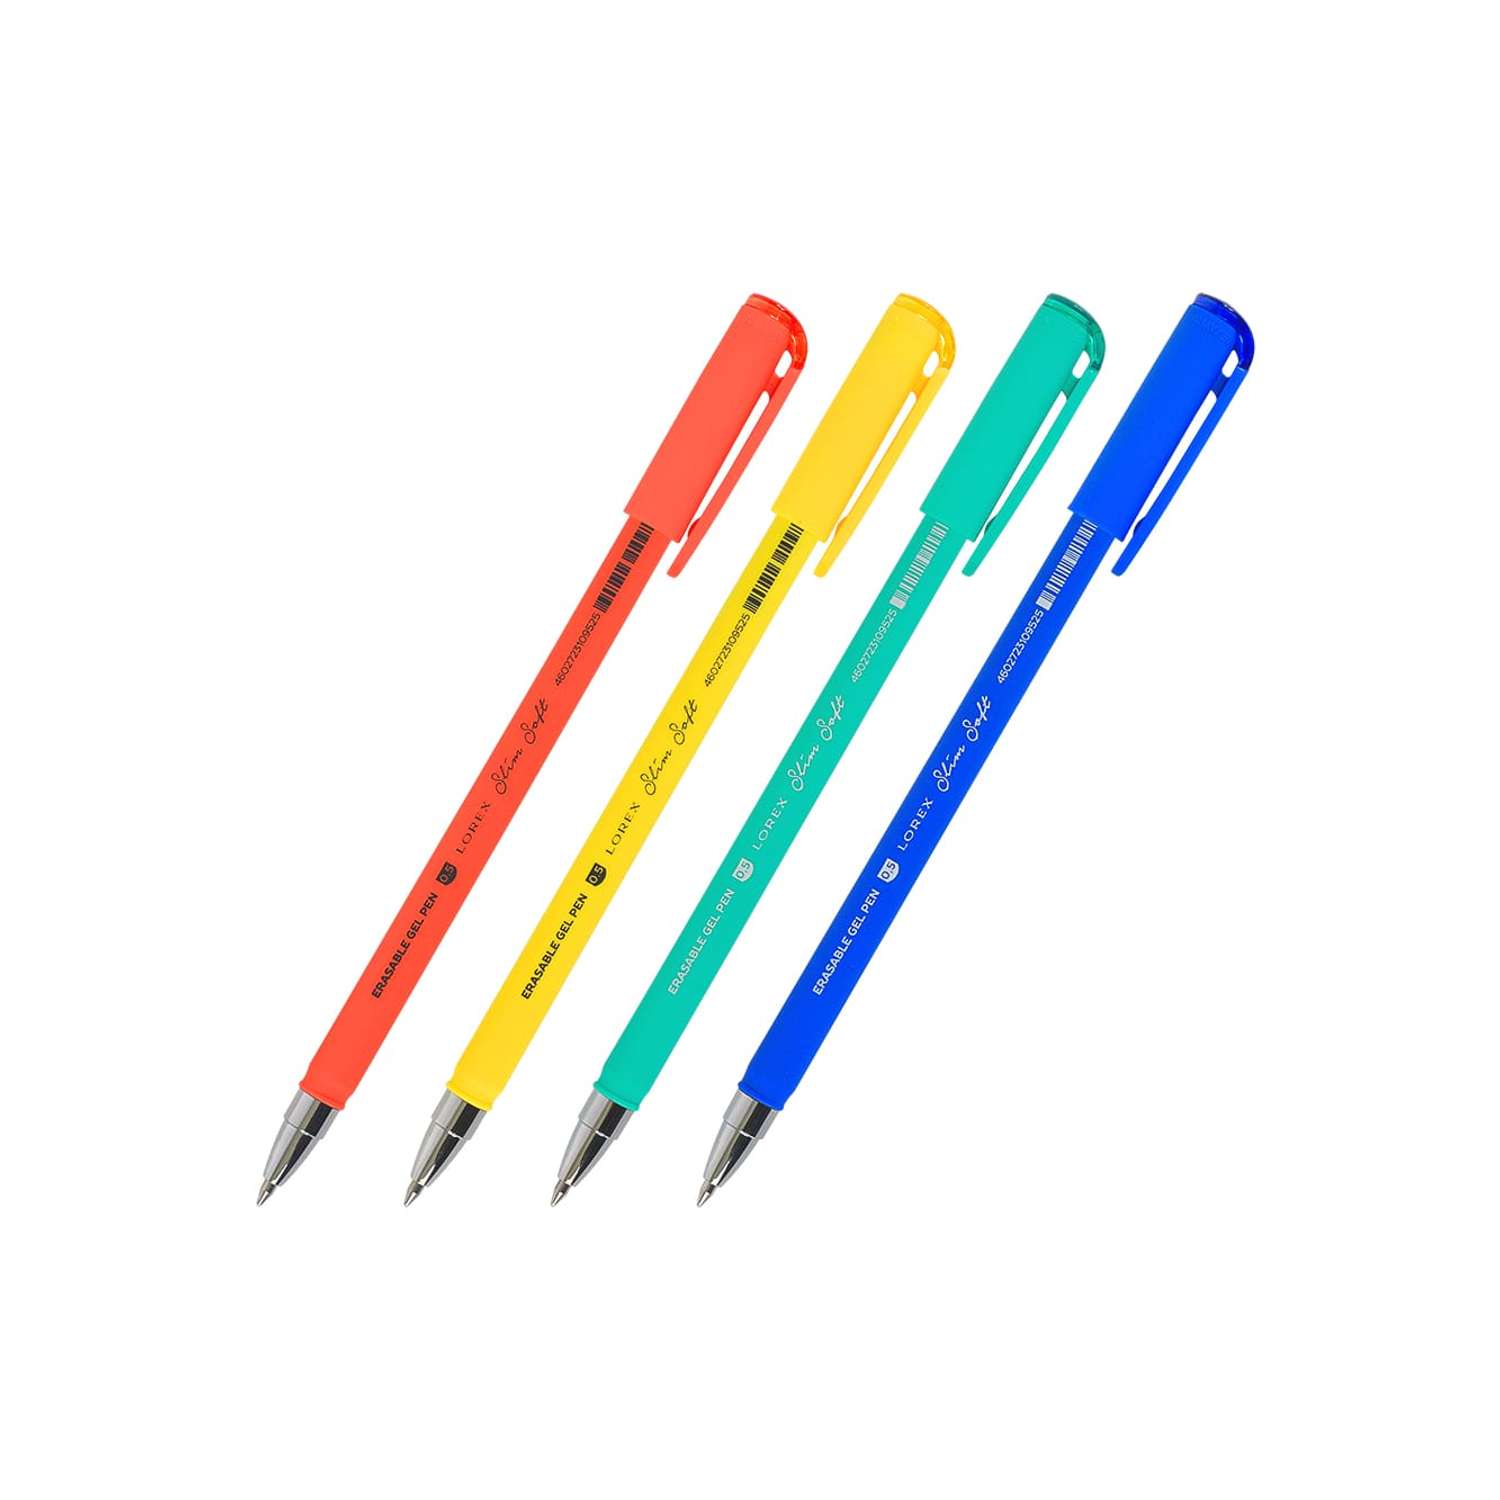 Ручки гелевые в наборе Lorex Stationery серия Slim Soft 0.5 мм 4 шт пиши стирай круглый прорезиненный корпус ассорти - фото 1